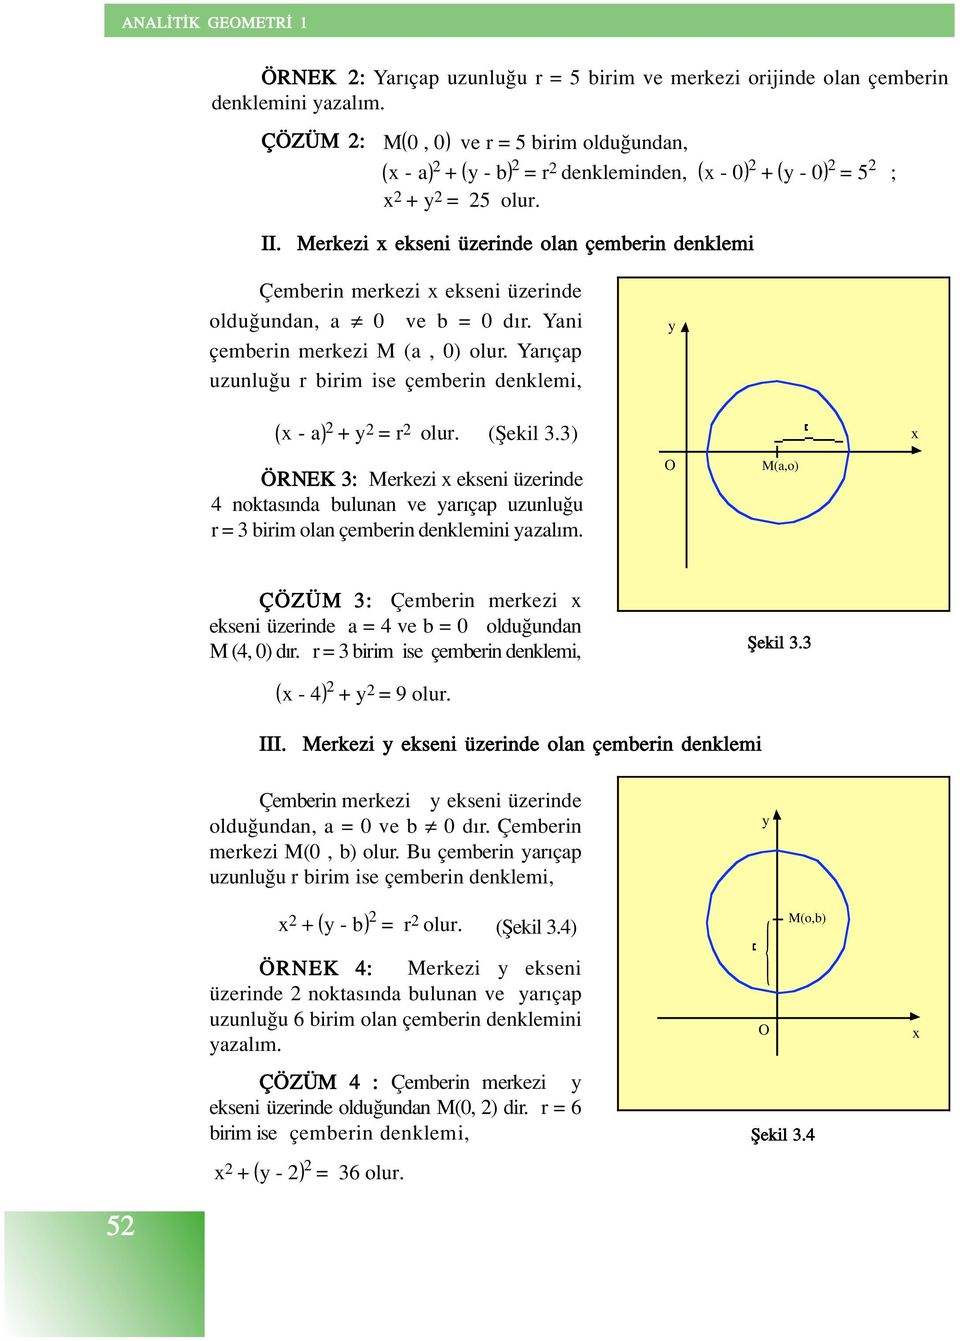 Yar çap uzunlu u r birim ise çemberin denklemi, - a + = r olur. (fiekil 3.3) ÖRNEK 3: Merkezi ekseni üzerinde 4 noktas nda bulunan ve ar çap uzunlu u r = 3 birim olan çemberin denklemini azal m.